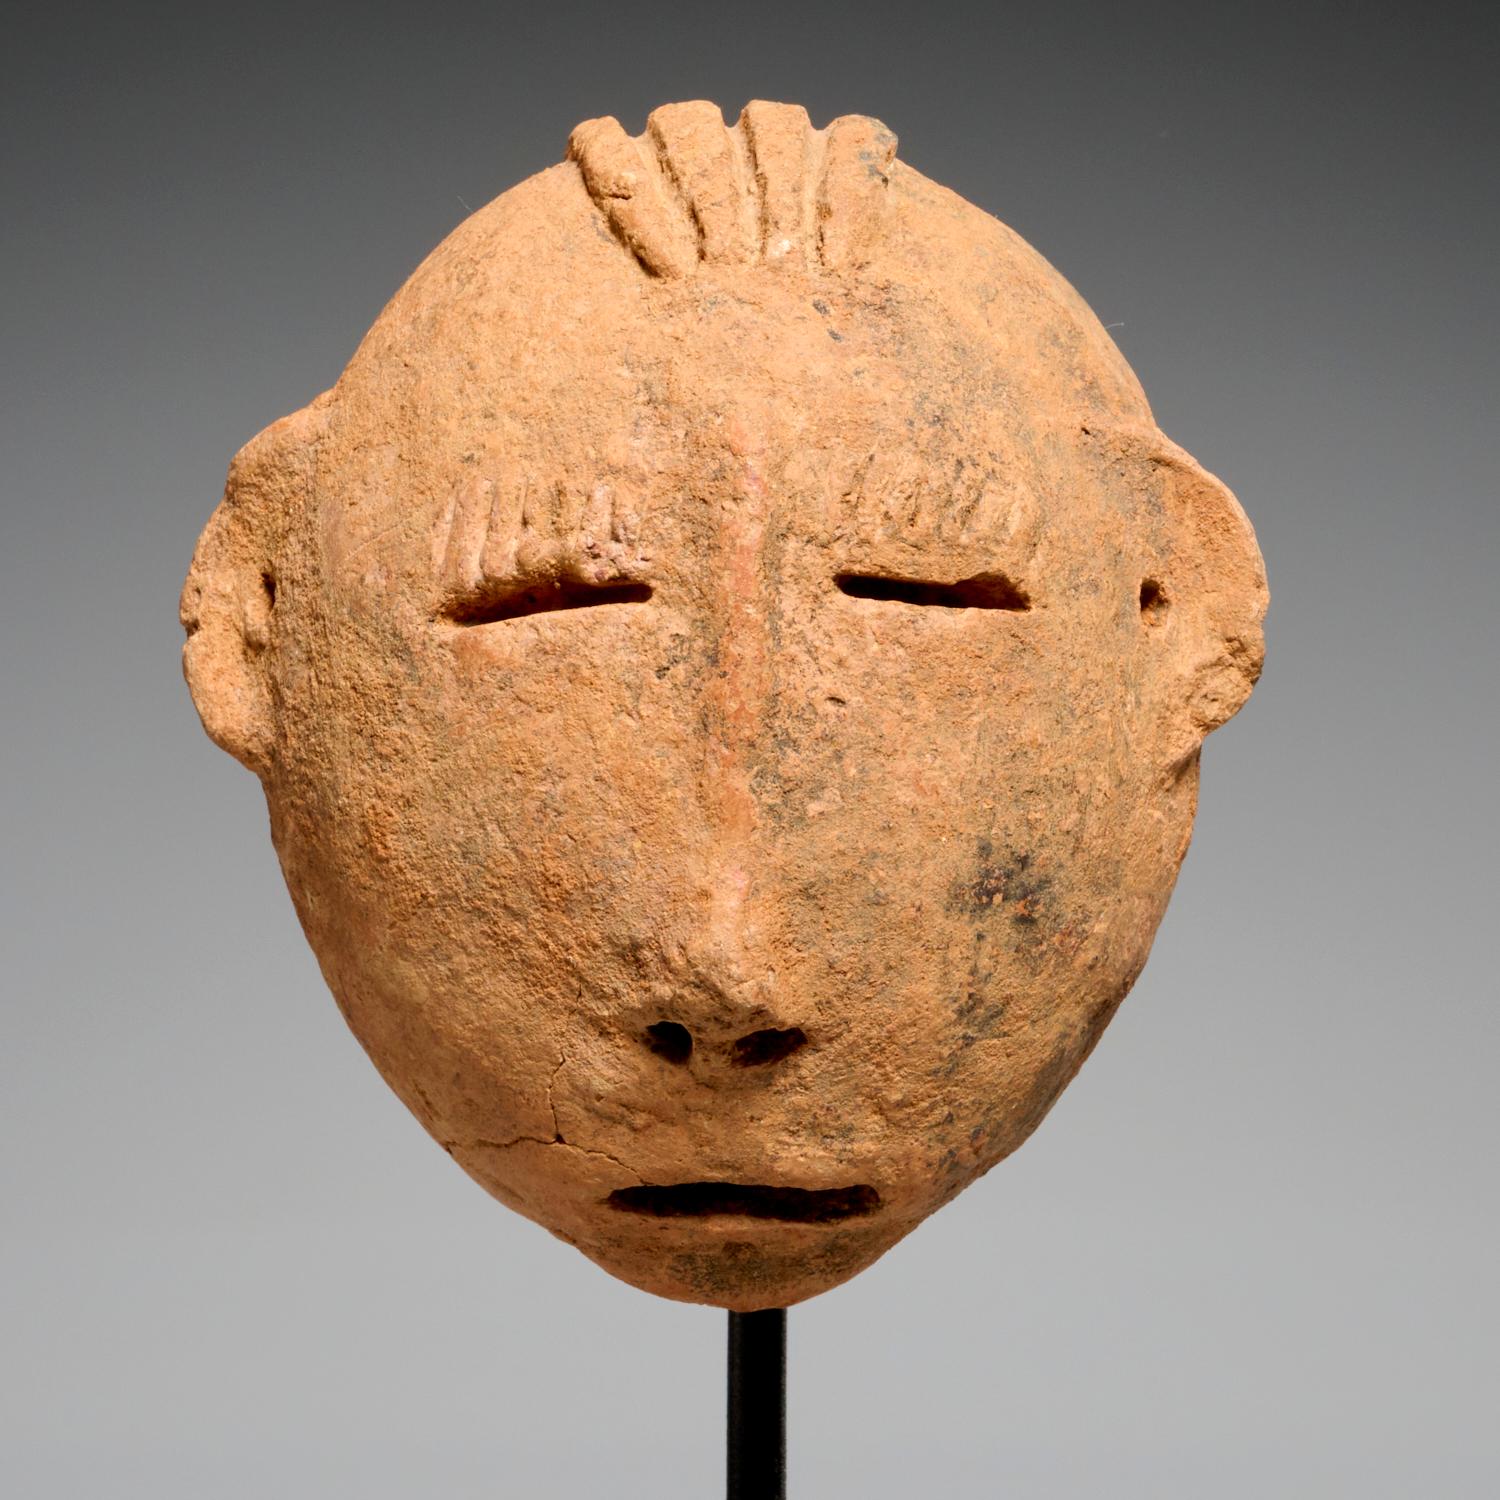 Köpfe aus gebranntem Ton aus Bura, möglicherweise 3.-10. Jahrhundert. CE, Niger, Bura-Völker. Es handelt sich um sehr ausdrucksstarke Exemplare auf Spezialmontagen, die größeren mit Manganeinlagerungen.

Zwischen dem 3. und 10. Jahrhundert wurden